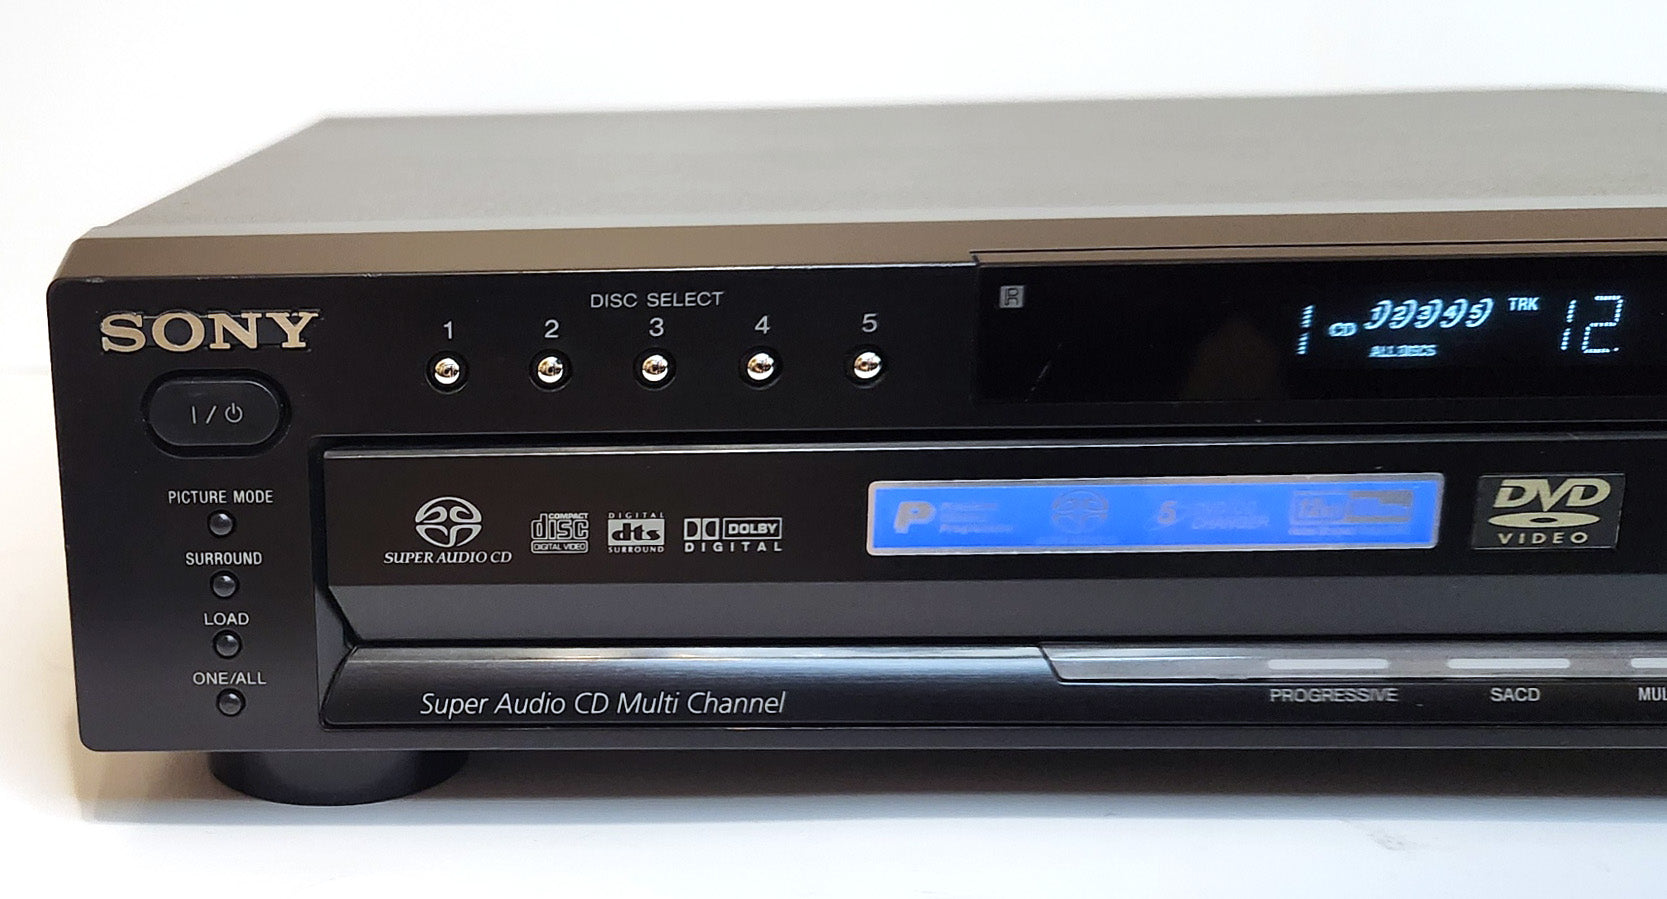 Sony DVP-NC685V DVD/CD Player, 5 Disc Carousel Changer - Left